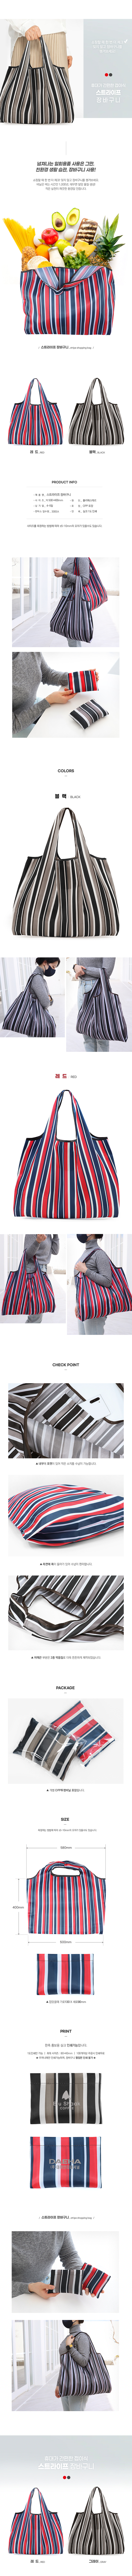 stripe_shopping_bag.jpg